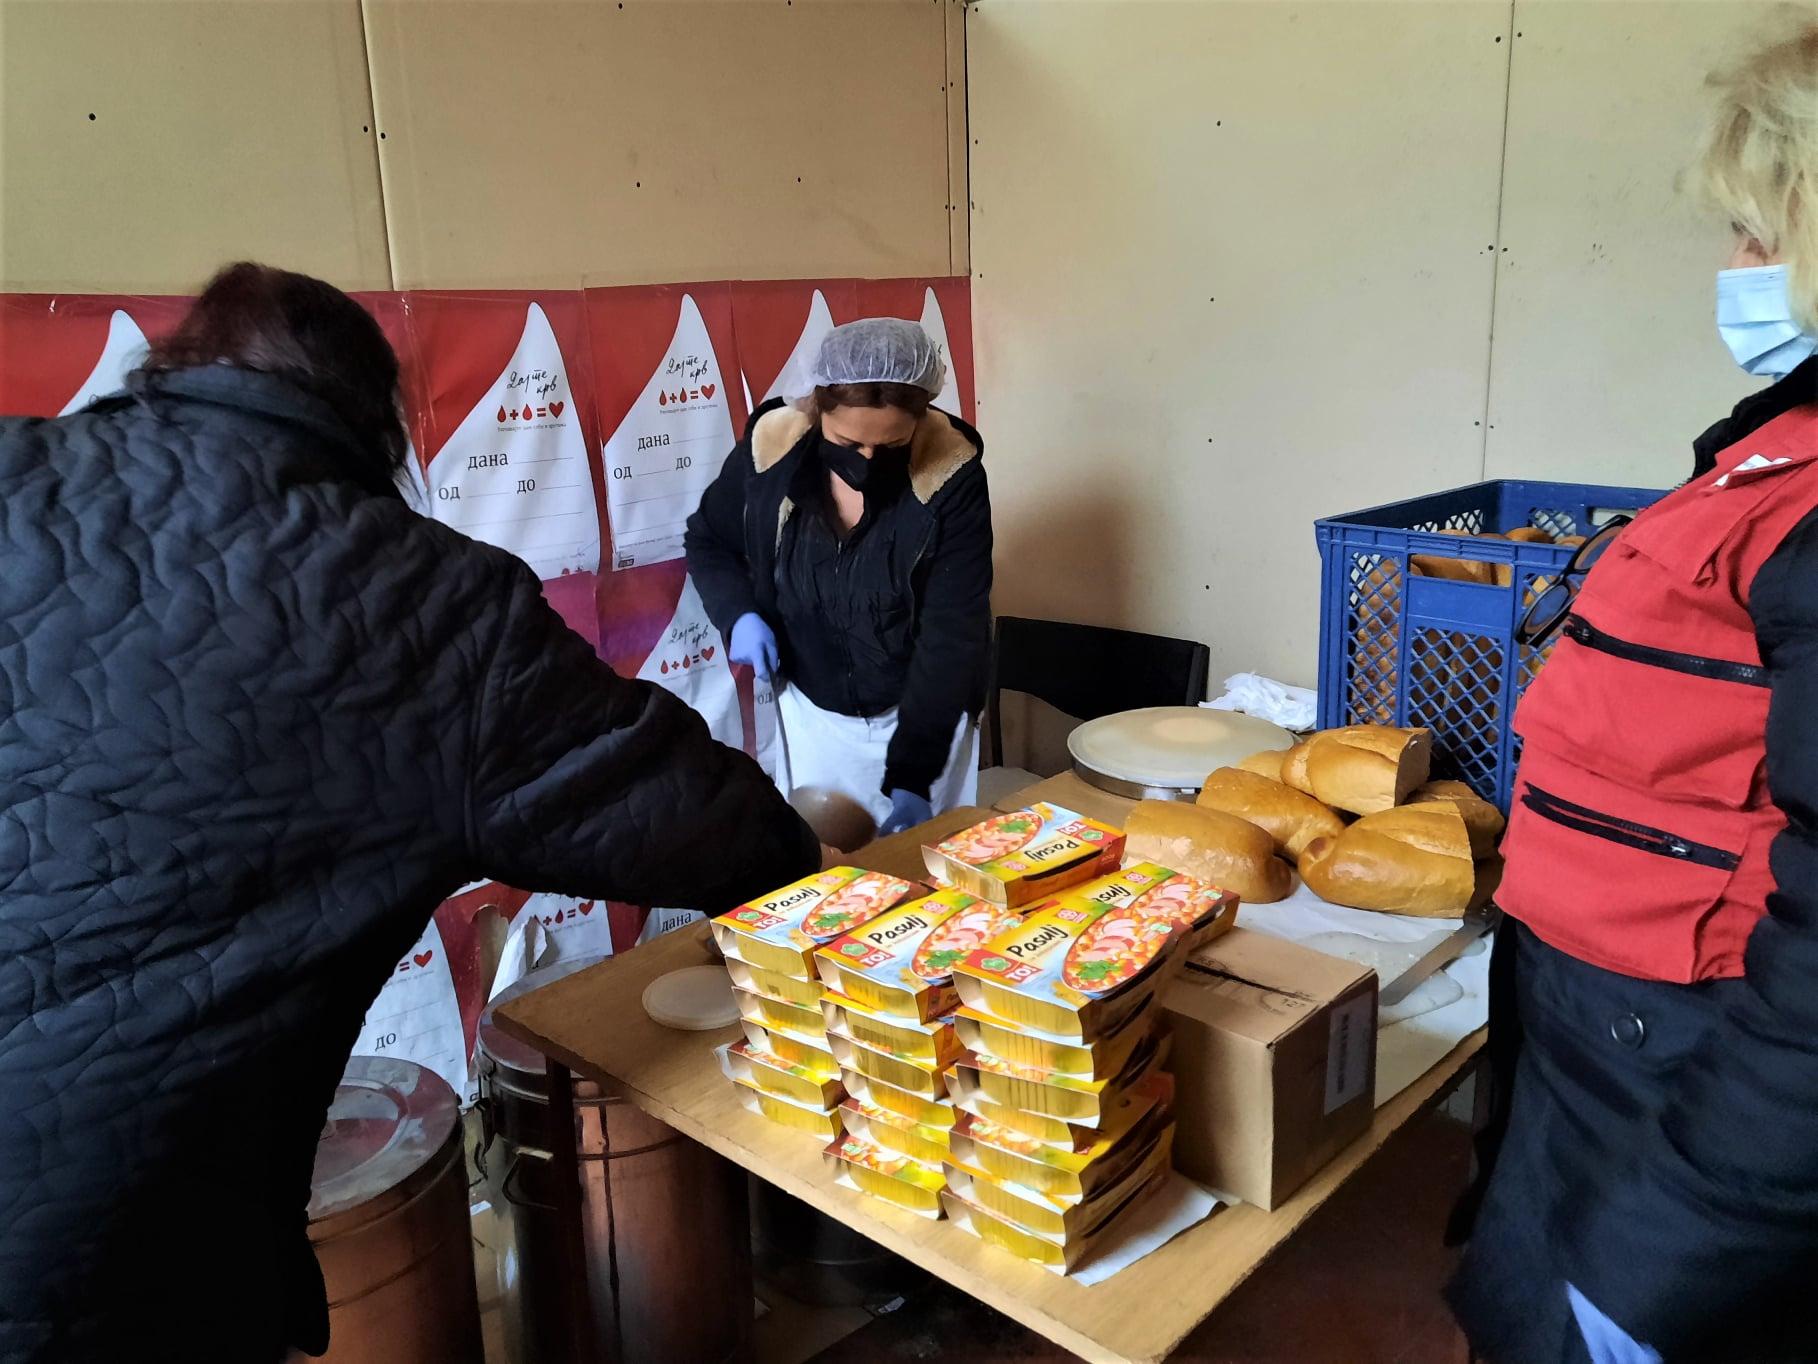 Još dodatnih davanja korisnicima narodne kuhinje Crvenog krsta u Valjevu -  uoči Božića podelili smo konzervirana gotova kuvana jela za 500 korisnika uoči praznika